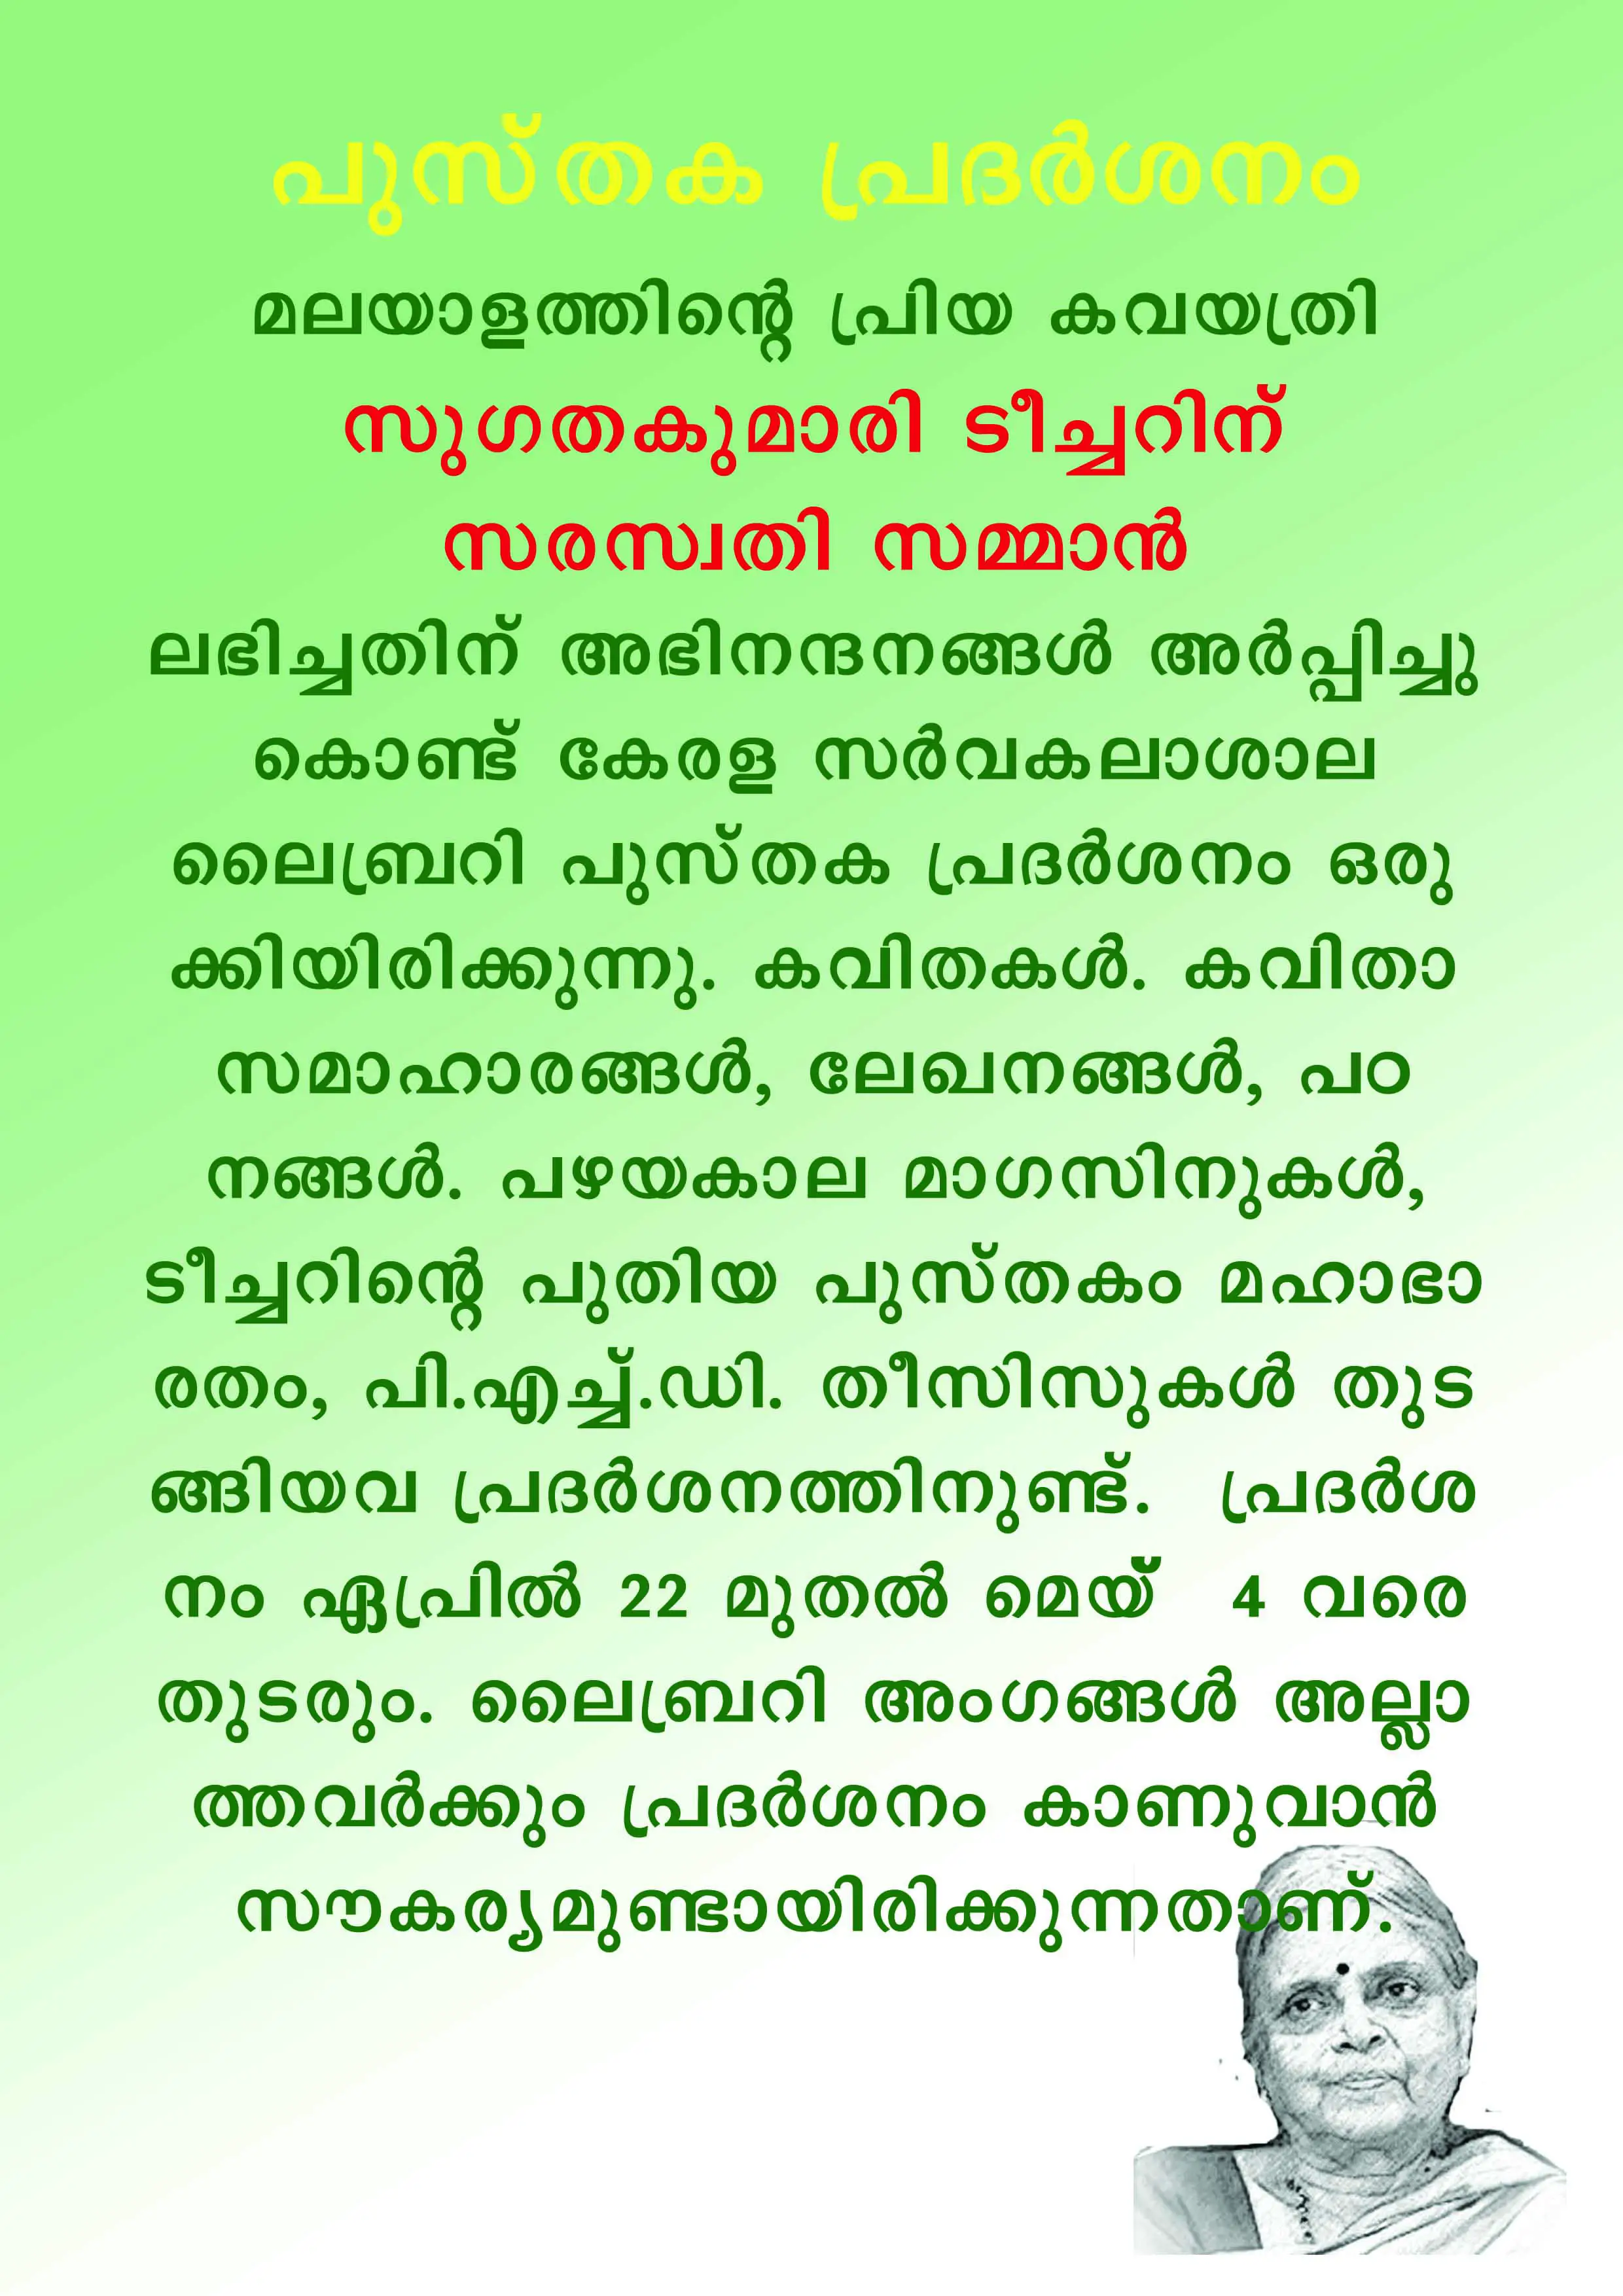 sugathakumari malayalam kavithakal mp3 download